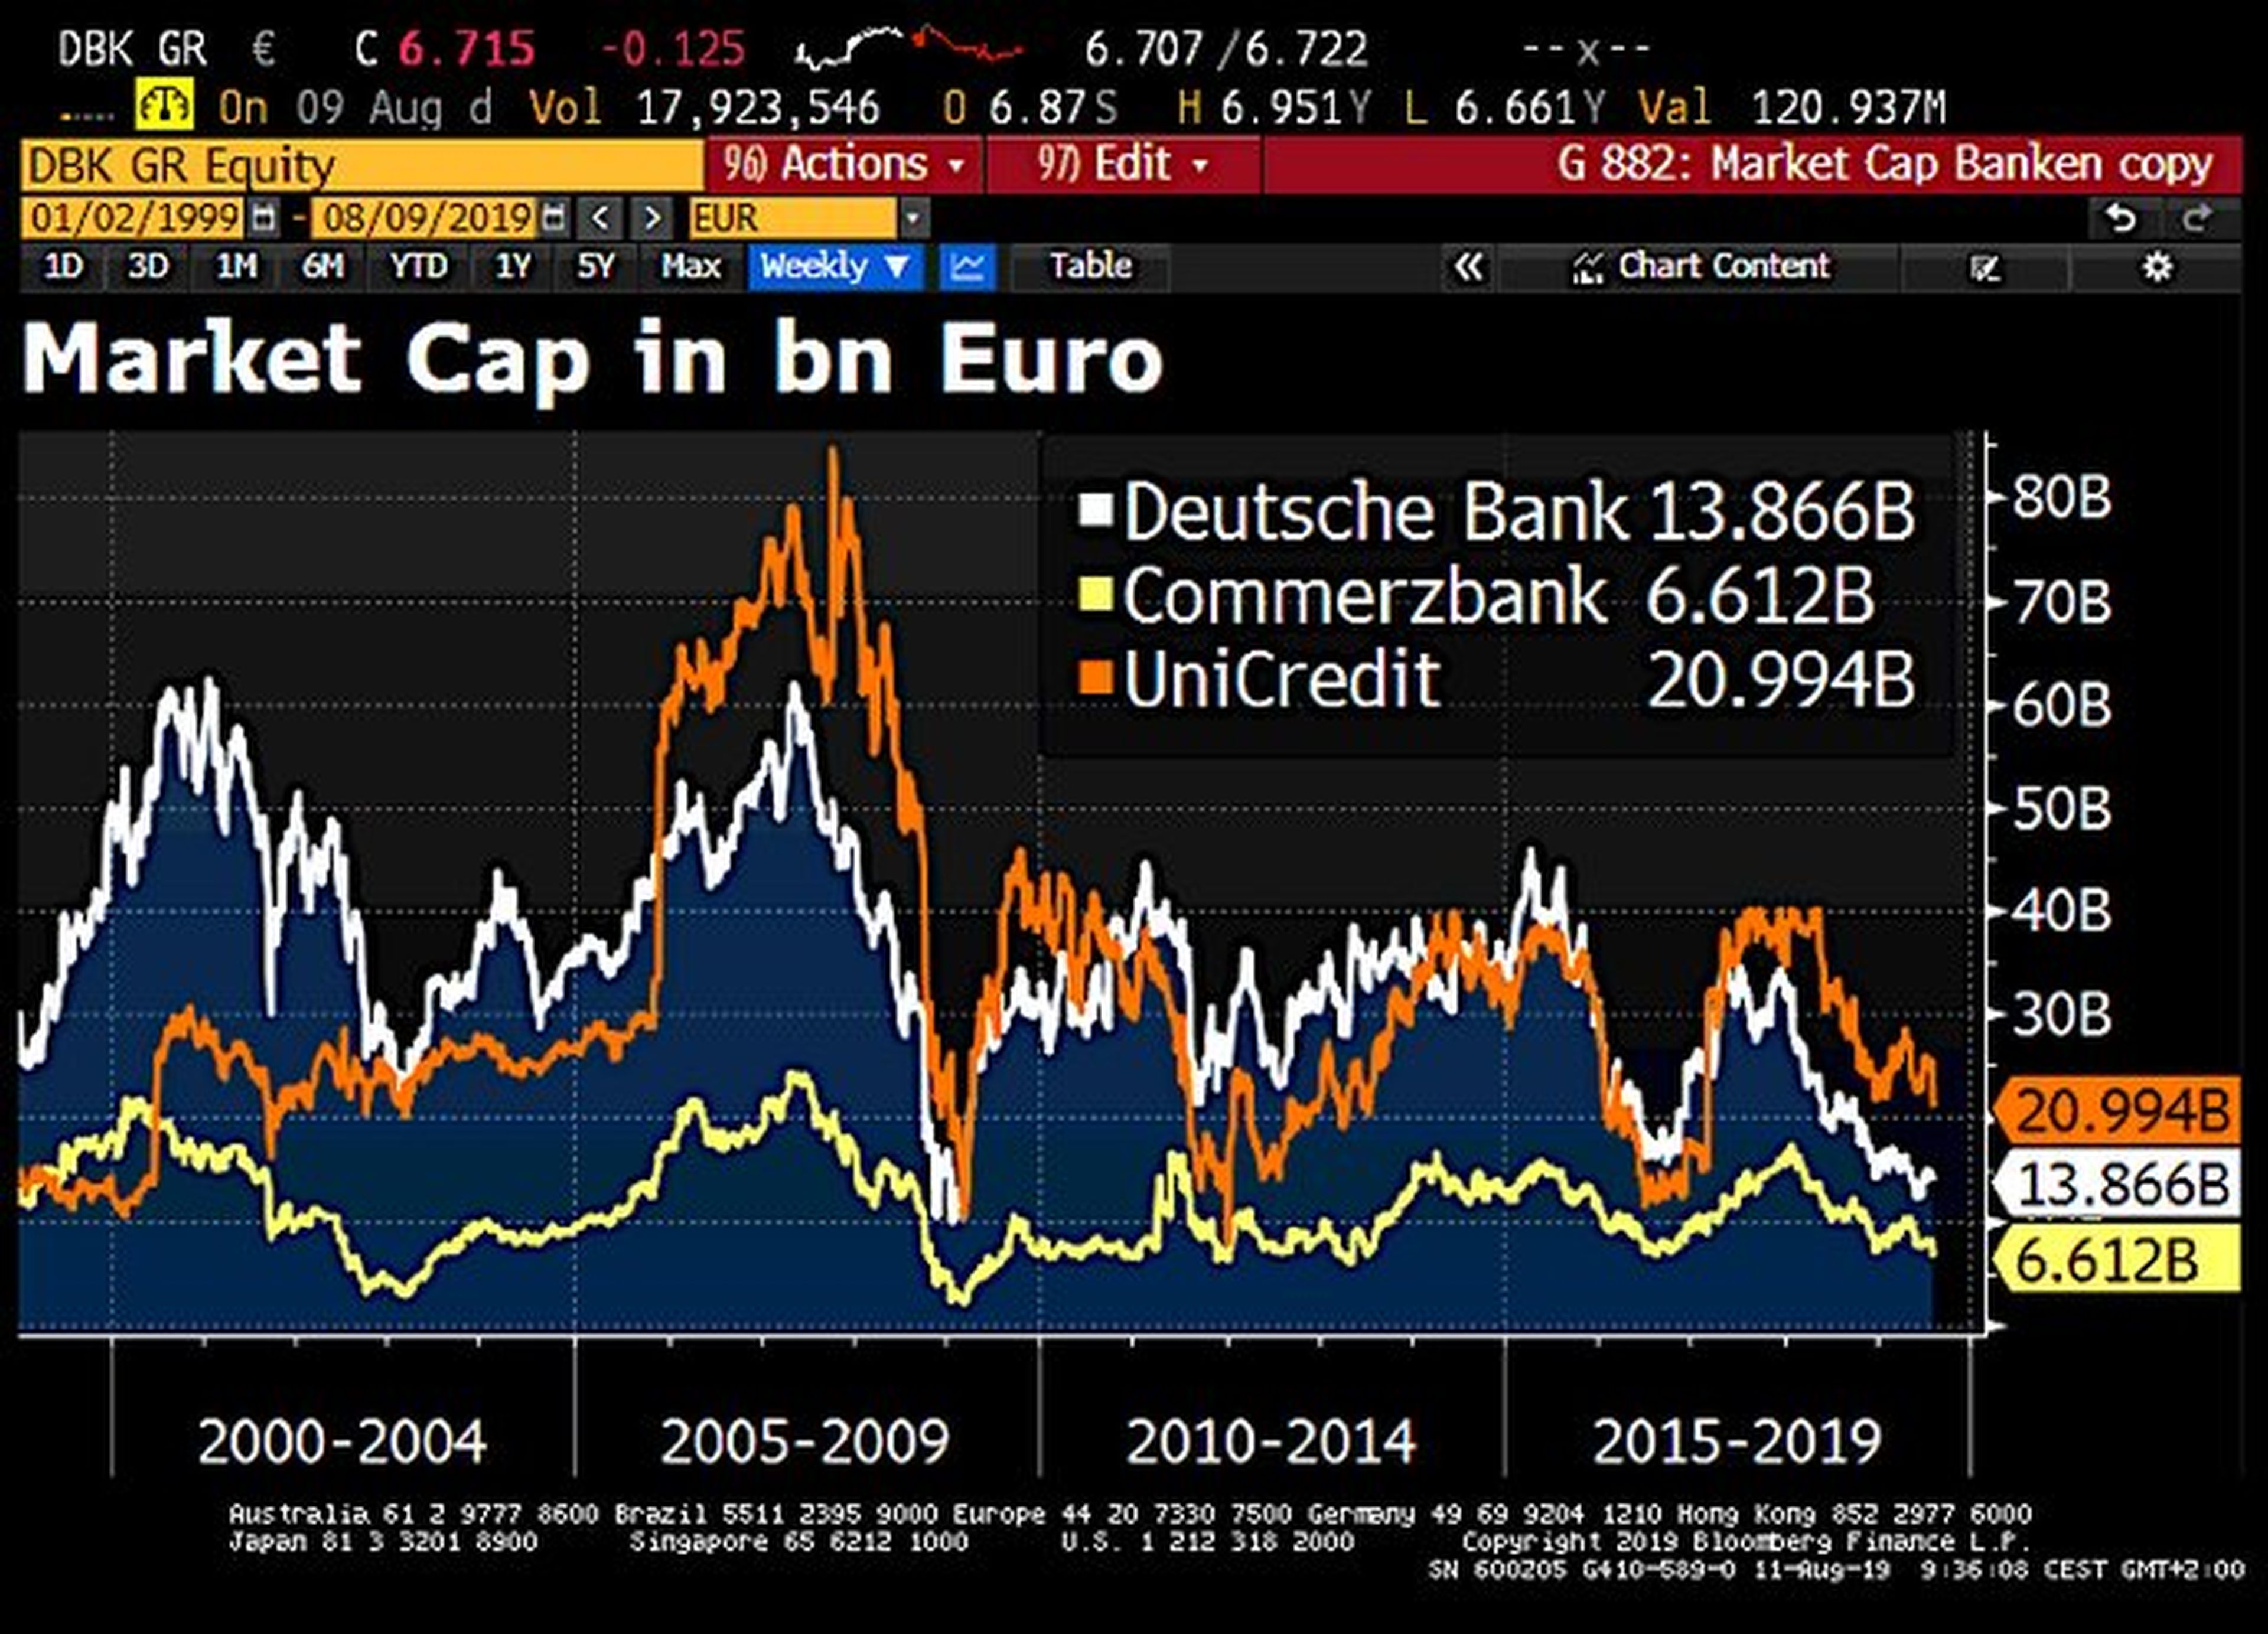 Capitalización bursátil de Deutsche Bank, Commerzbank y Unicredit